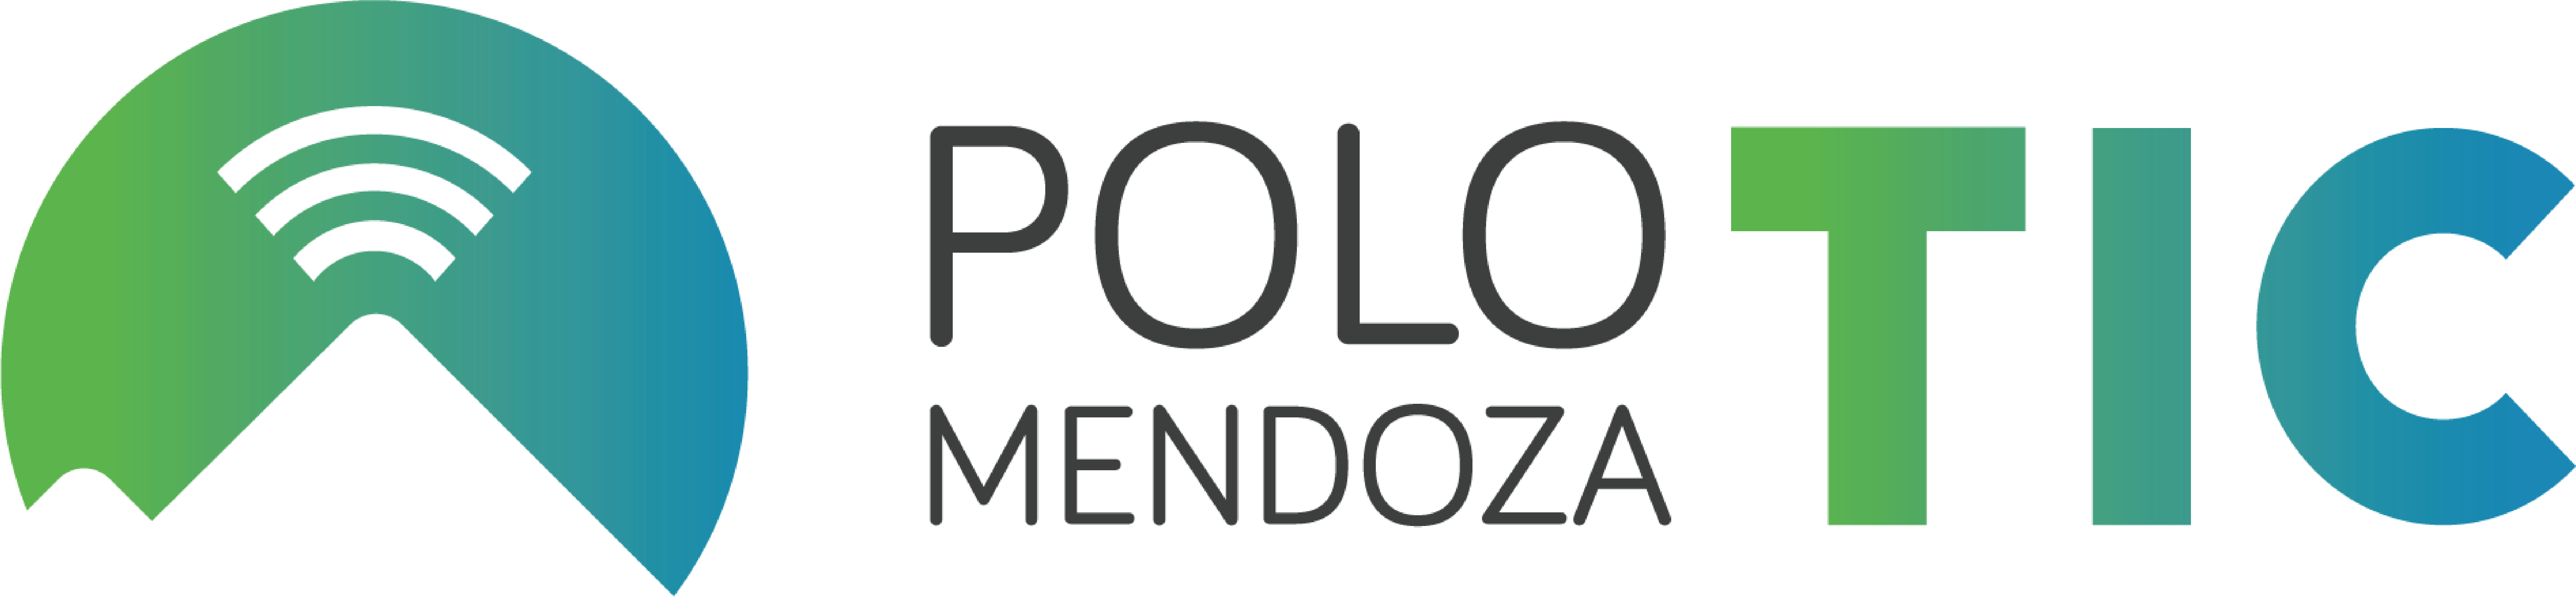 Polo TIC Mendoza presente en lanzamiento de un importante acto nacional